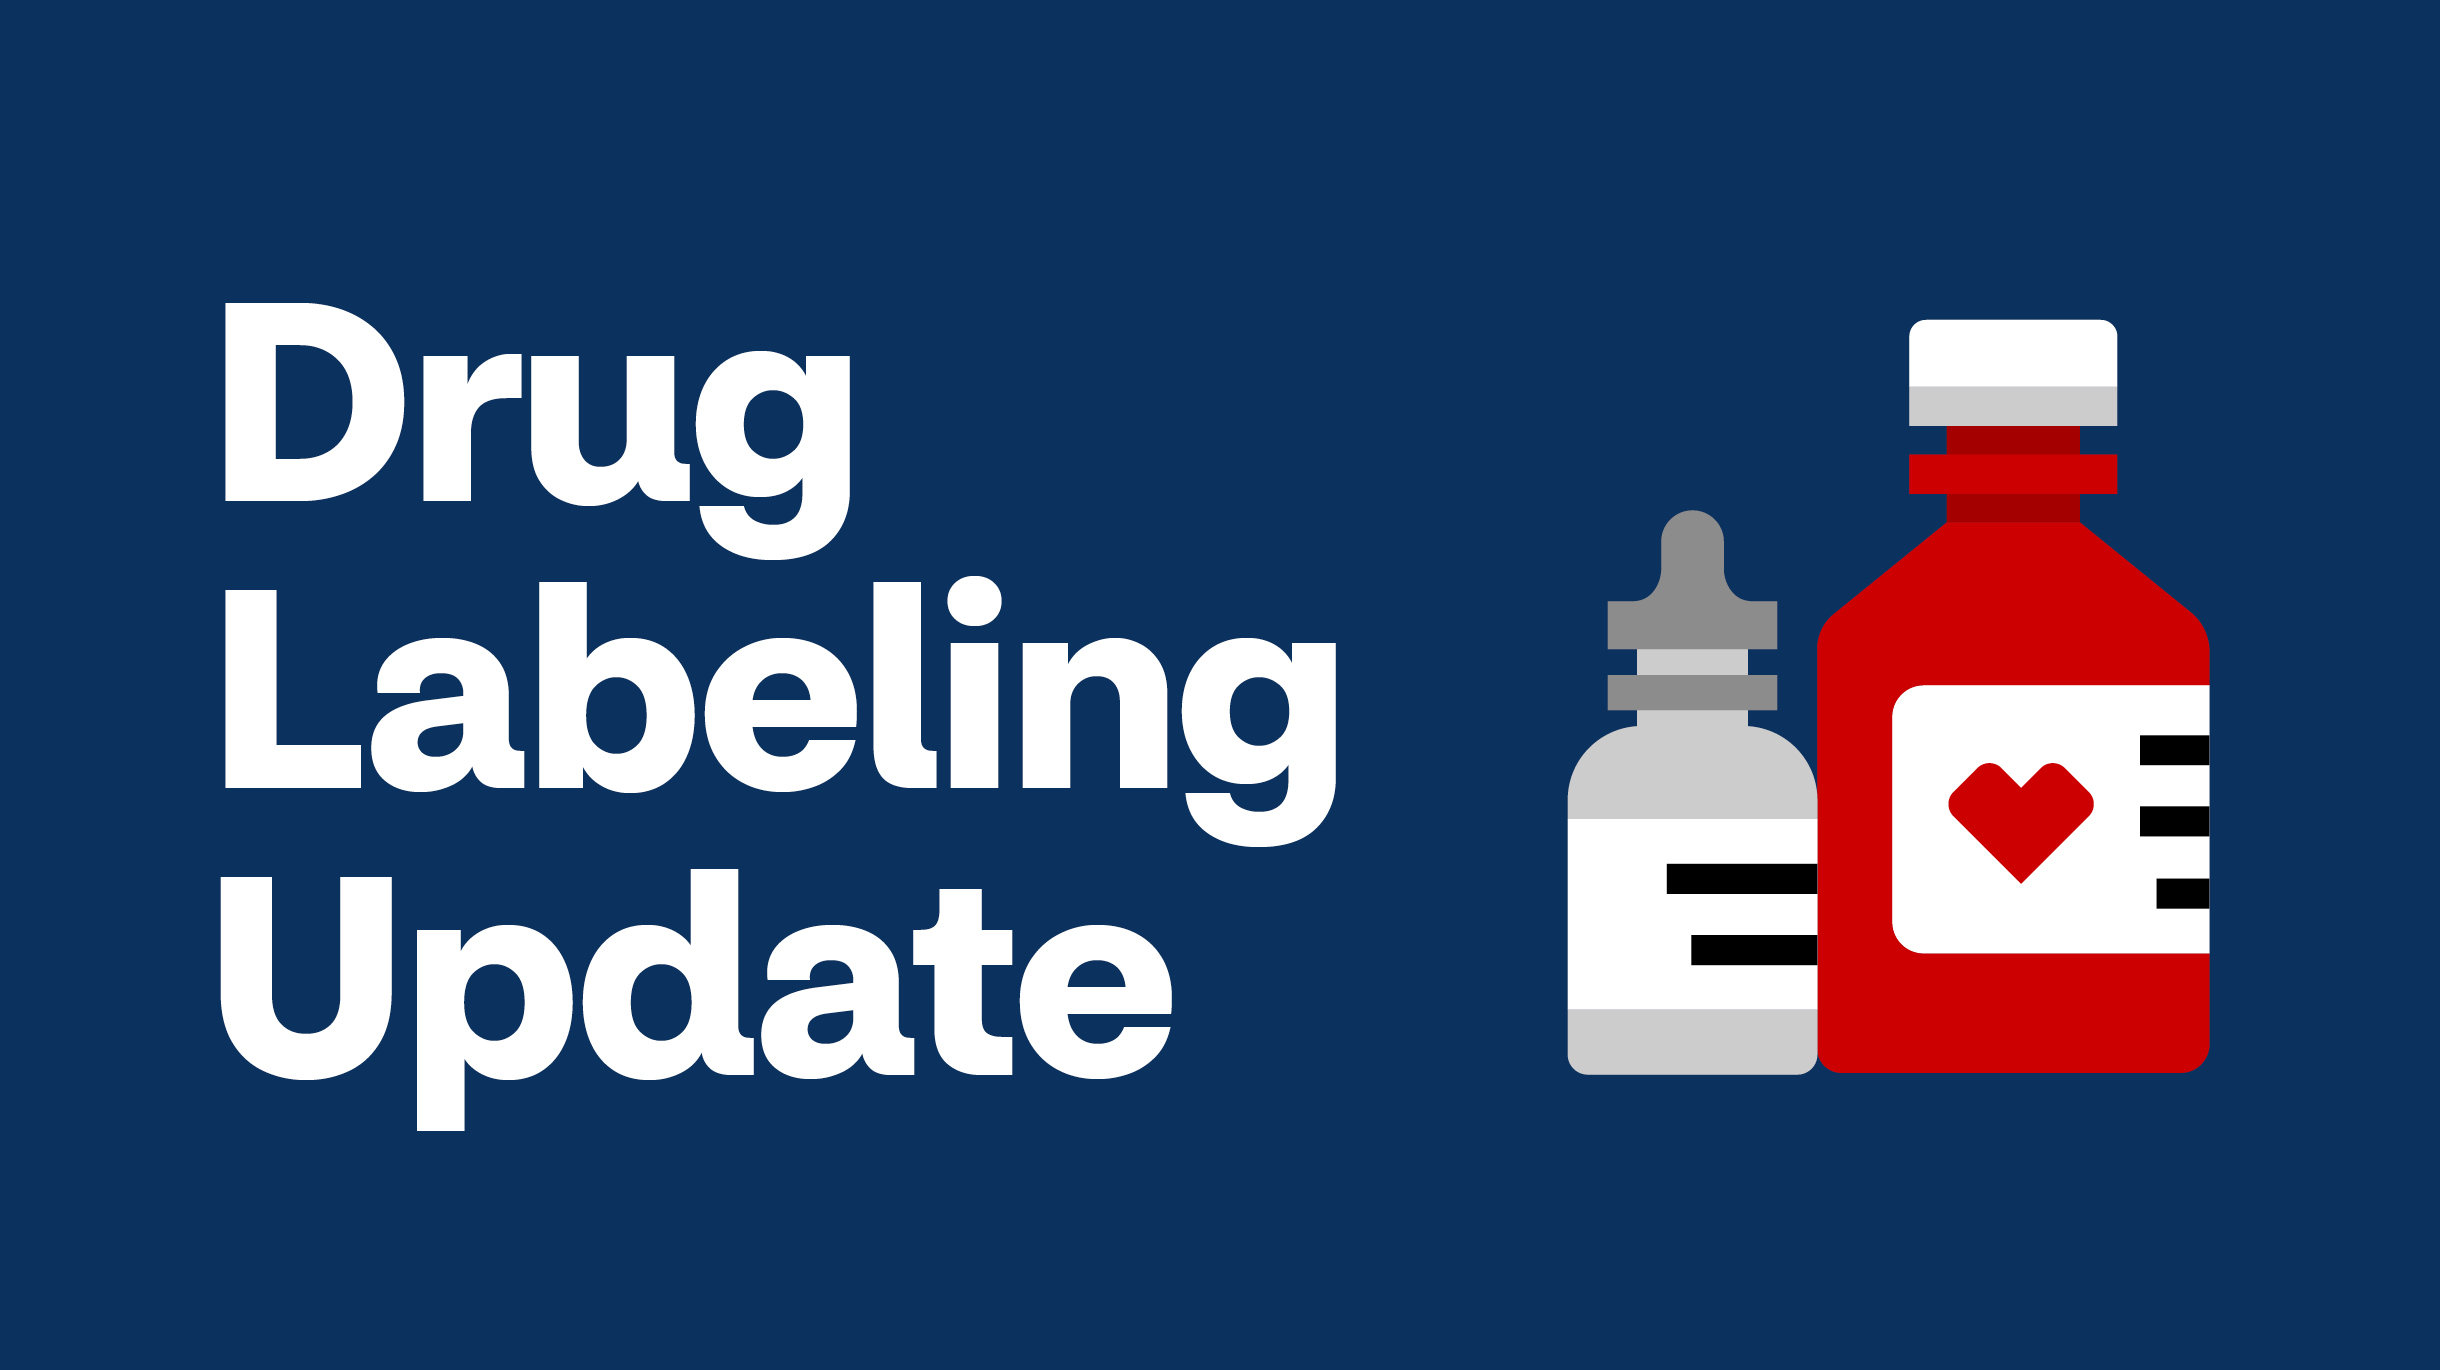 Drug Labeling Update